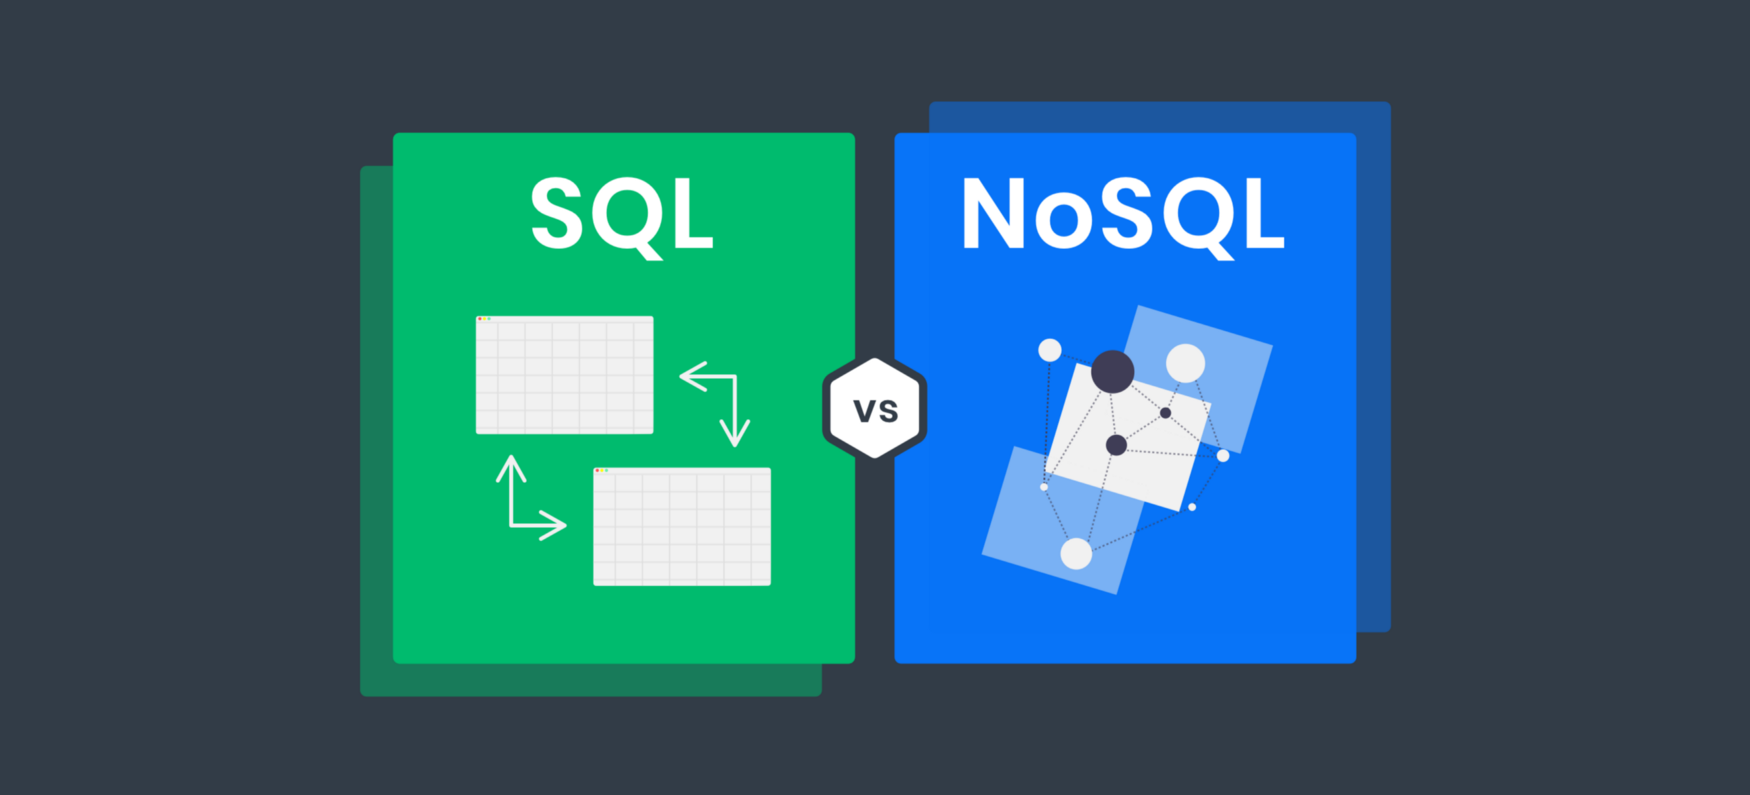 系统设计常见取舍之一 SQL vs NoSQL